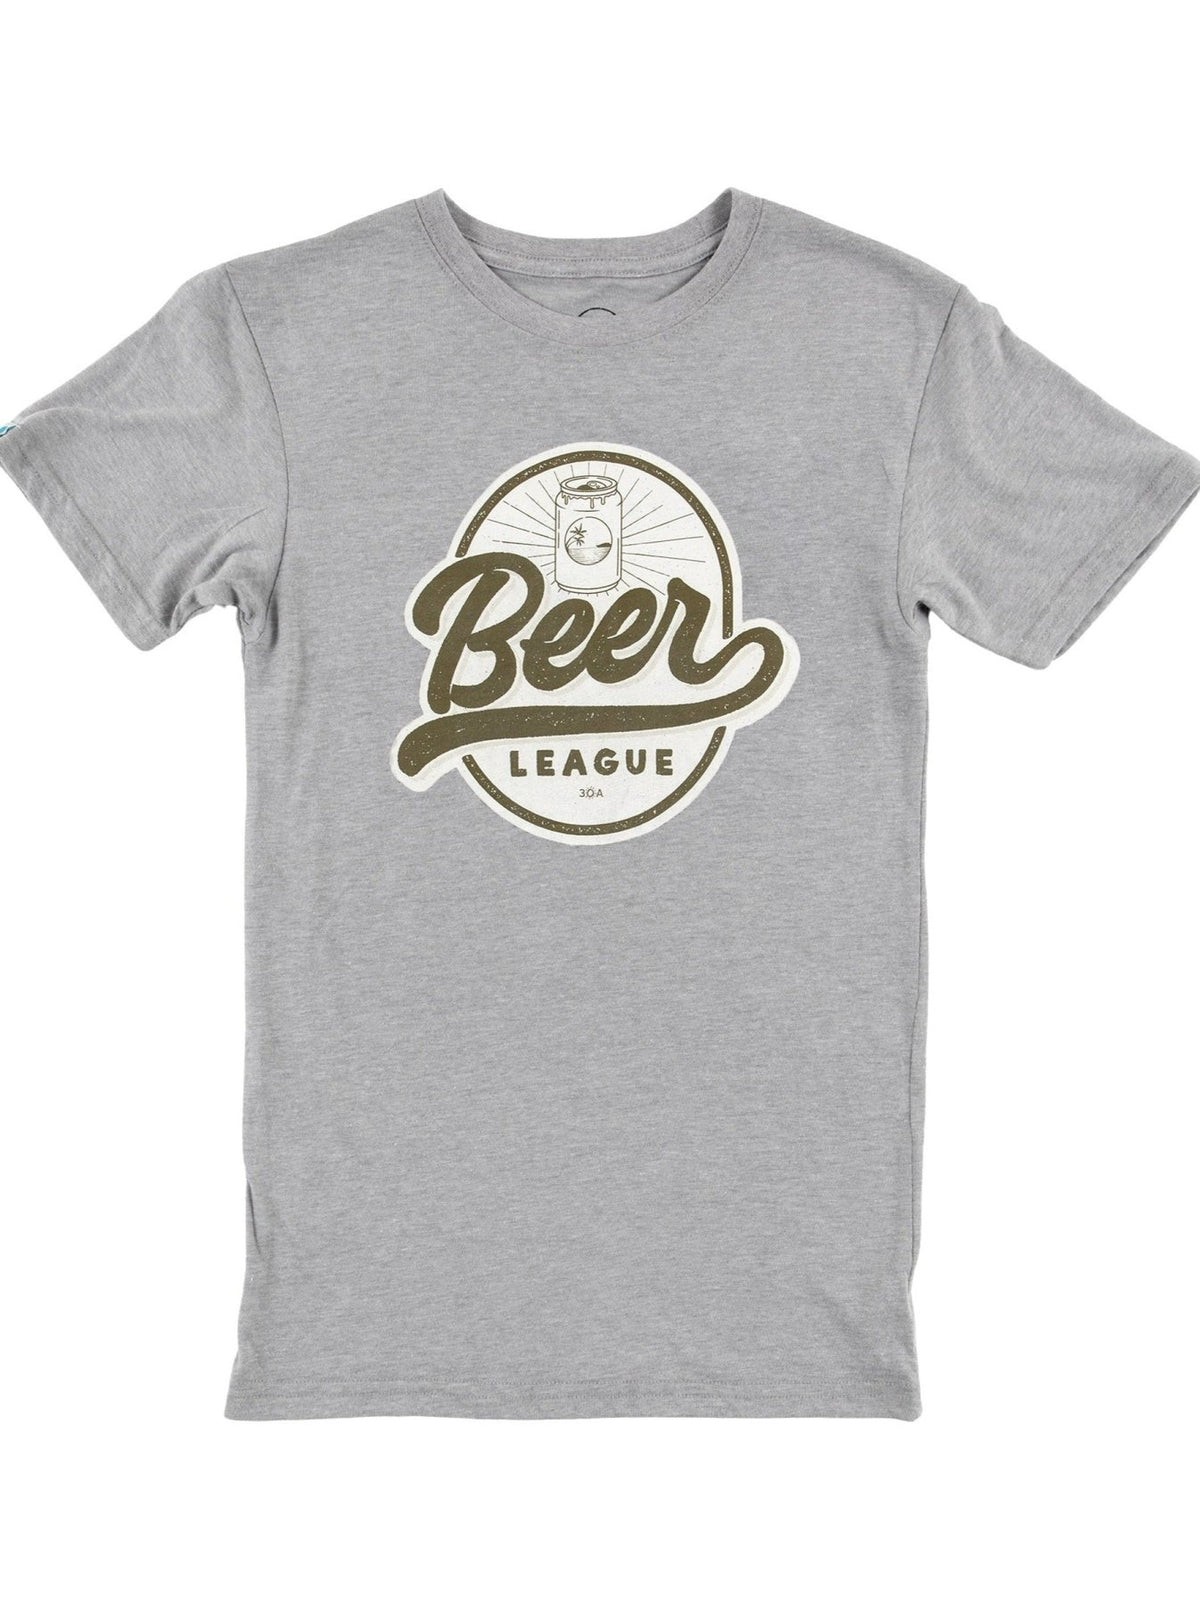 Beer League T - Shirt - 30A Gear - men tee